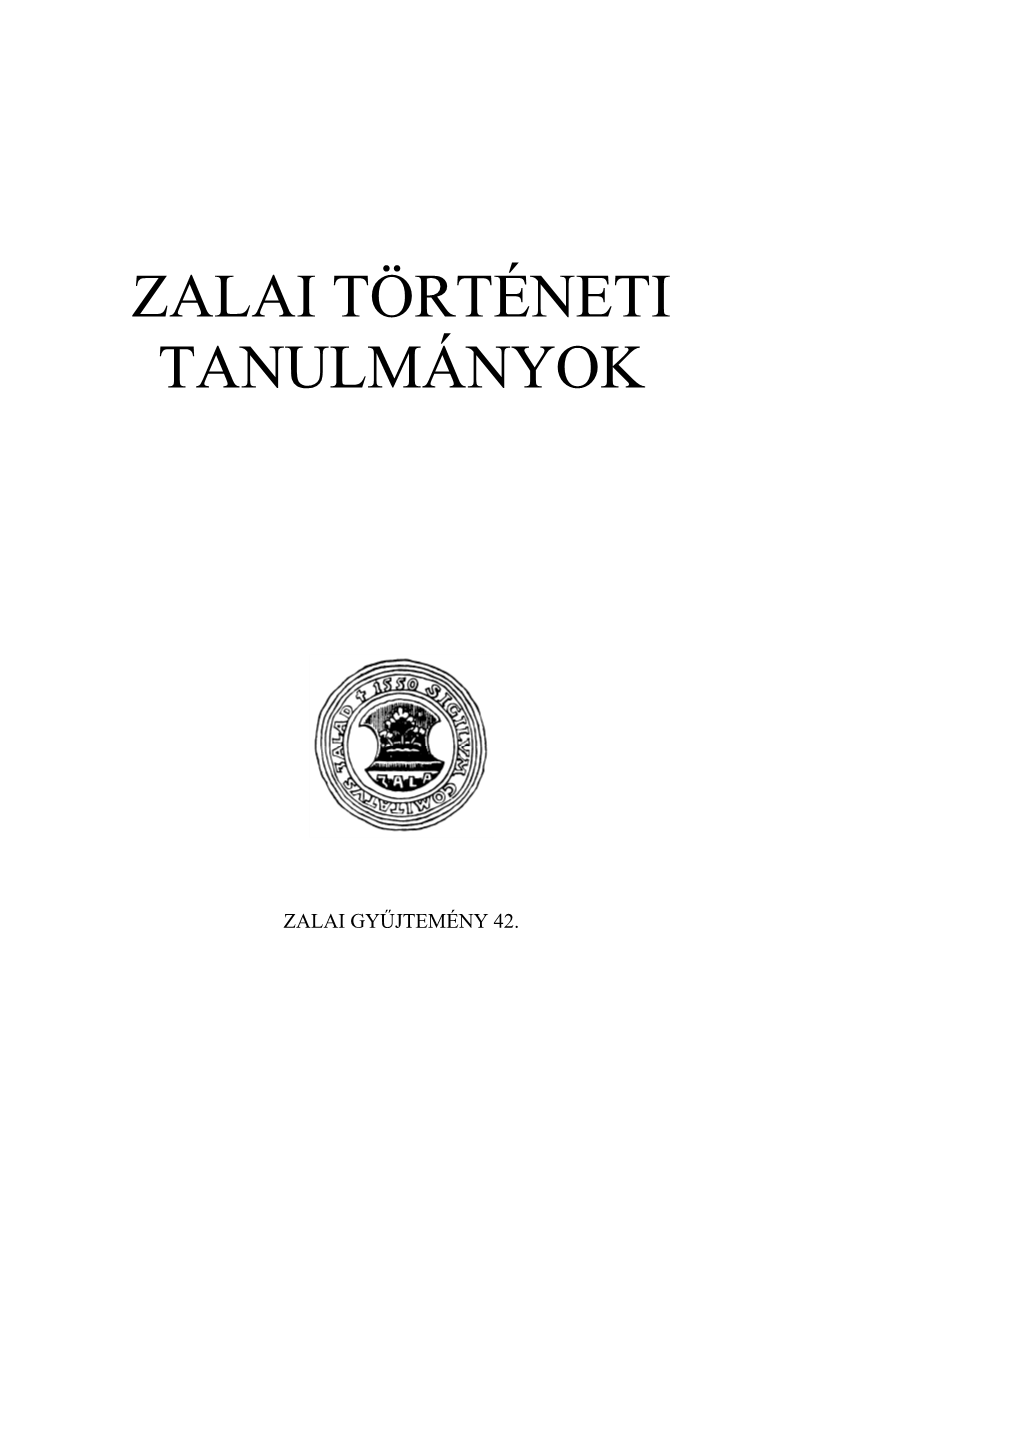 Zalai Történeti Tanulmányok